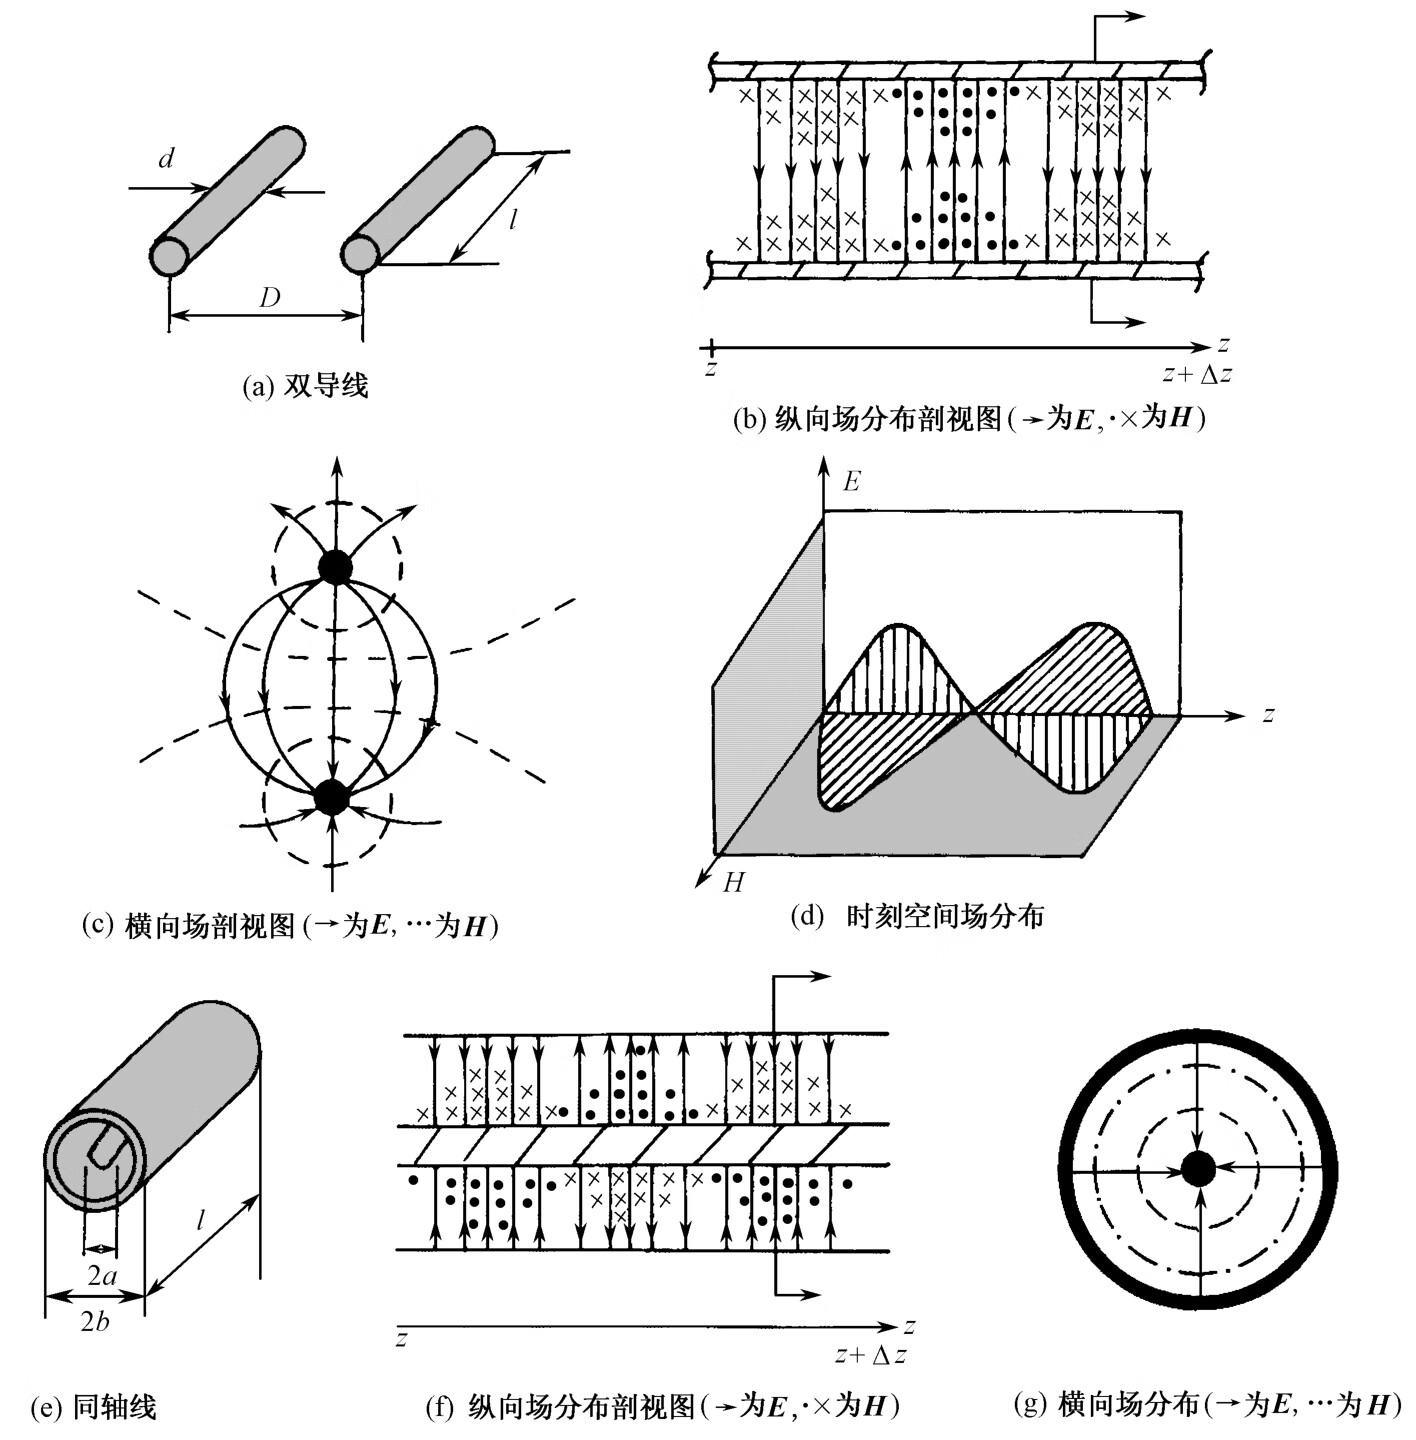 微波技术与天线（第3版）pdf/doc/txt格式电子书下载